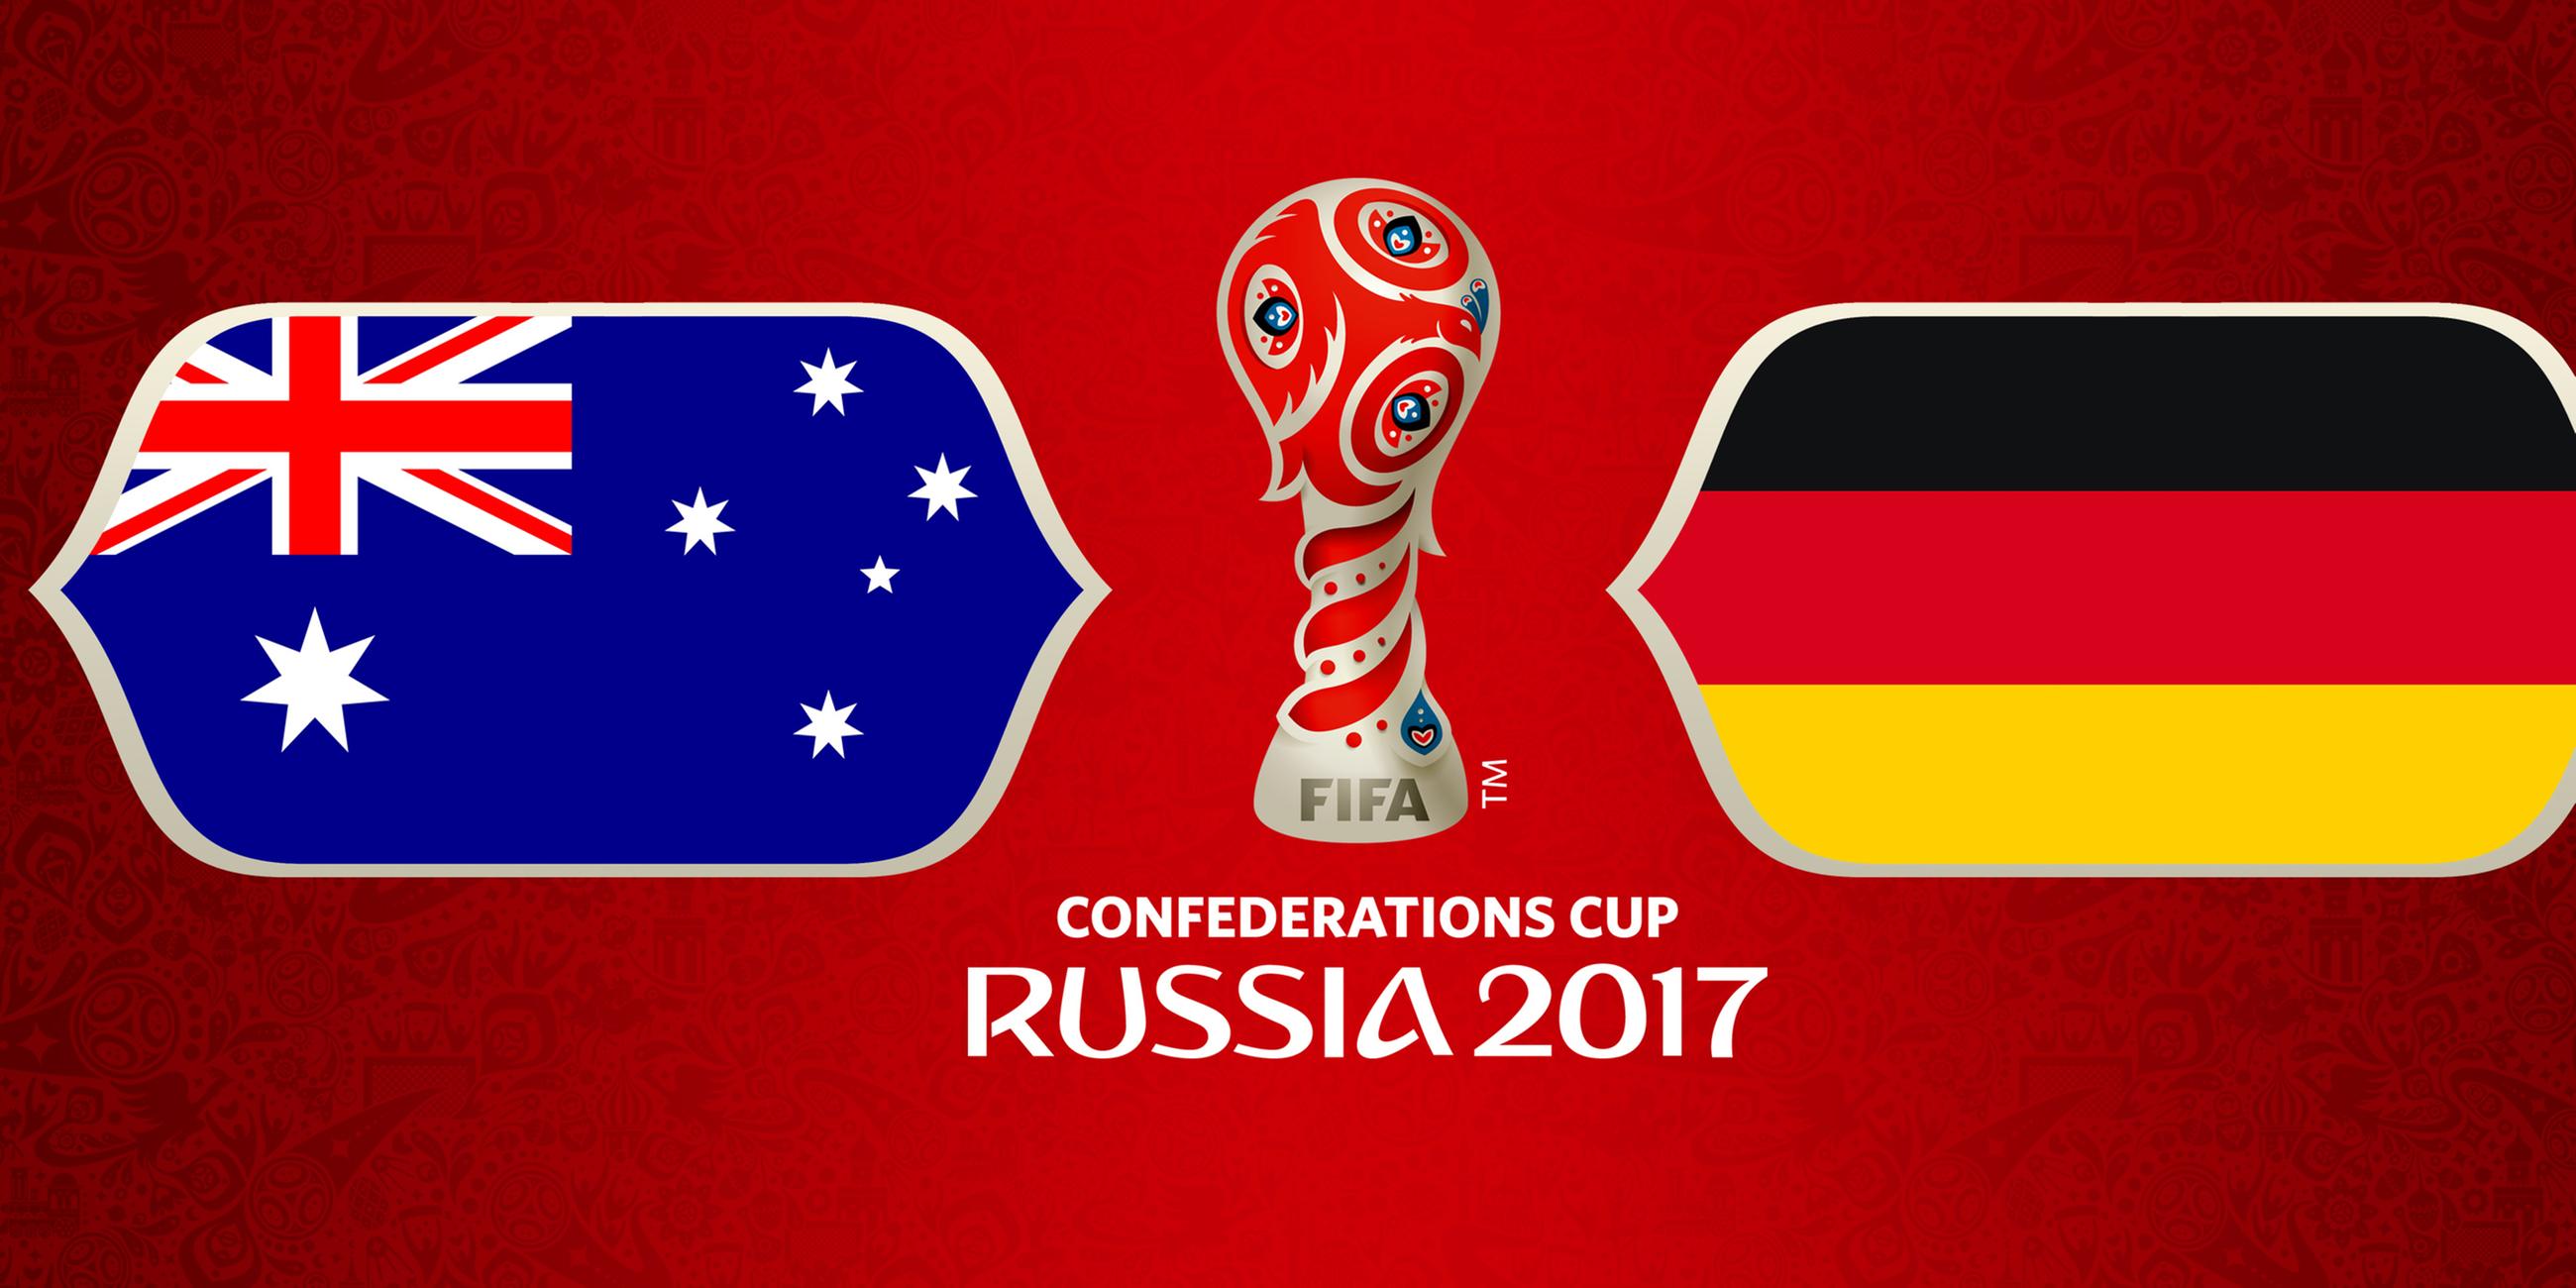 Confed-Cup: Spielpaarung Australien - Deutschland